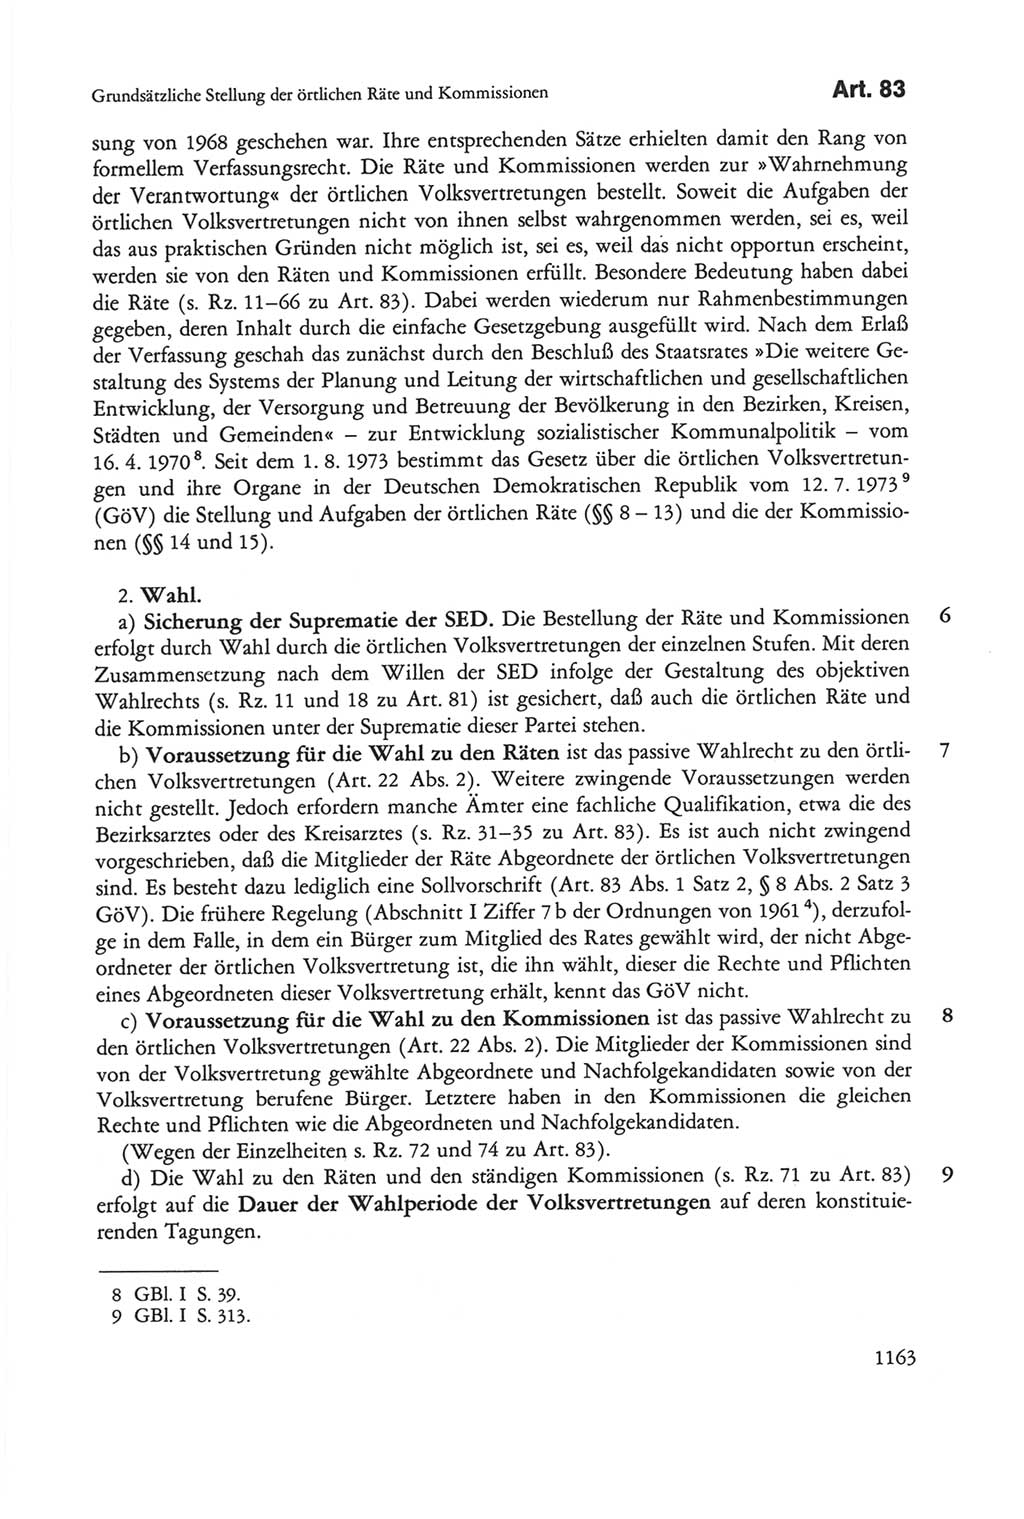 Die sozialistische Verfassung der Deutschen Demokratischen Republik (DDR), Kommentar mit einem Nachtrag 1997, Seite 1163 (Soz. Verf. DDR Komm. Nachtr. 1997, S. 1163)